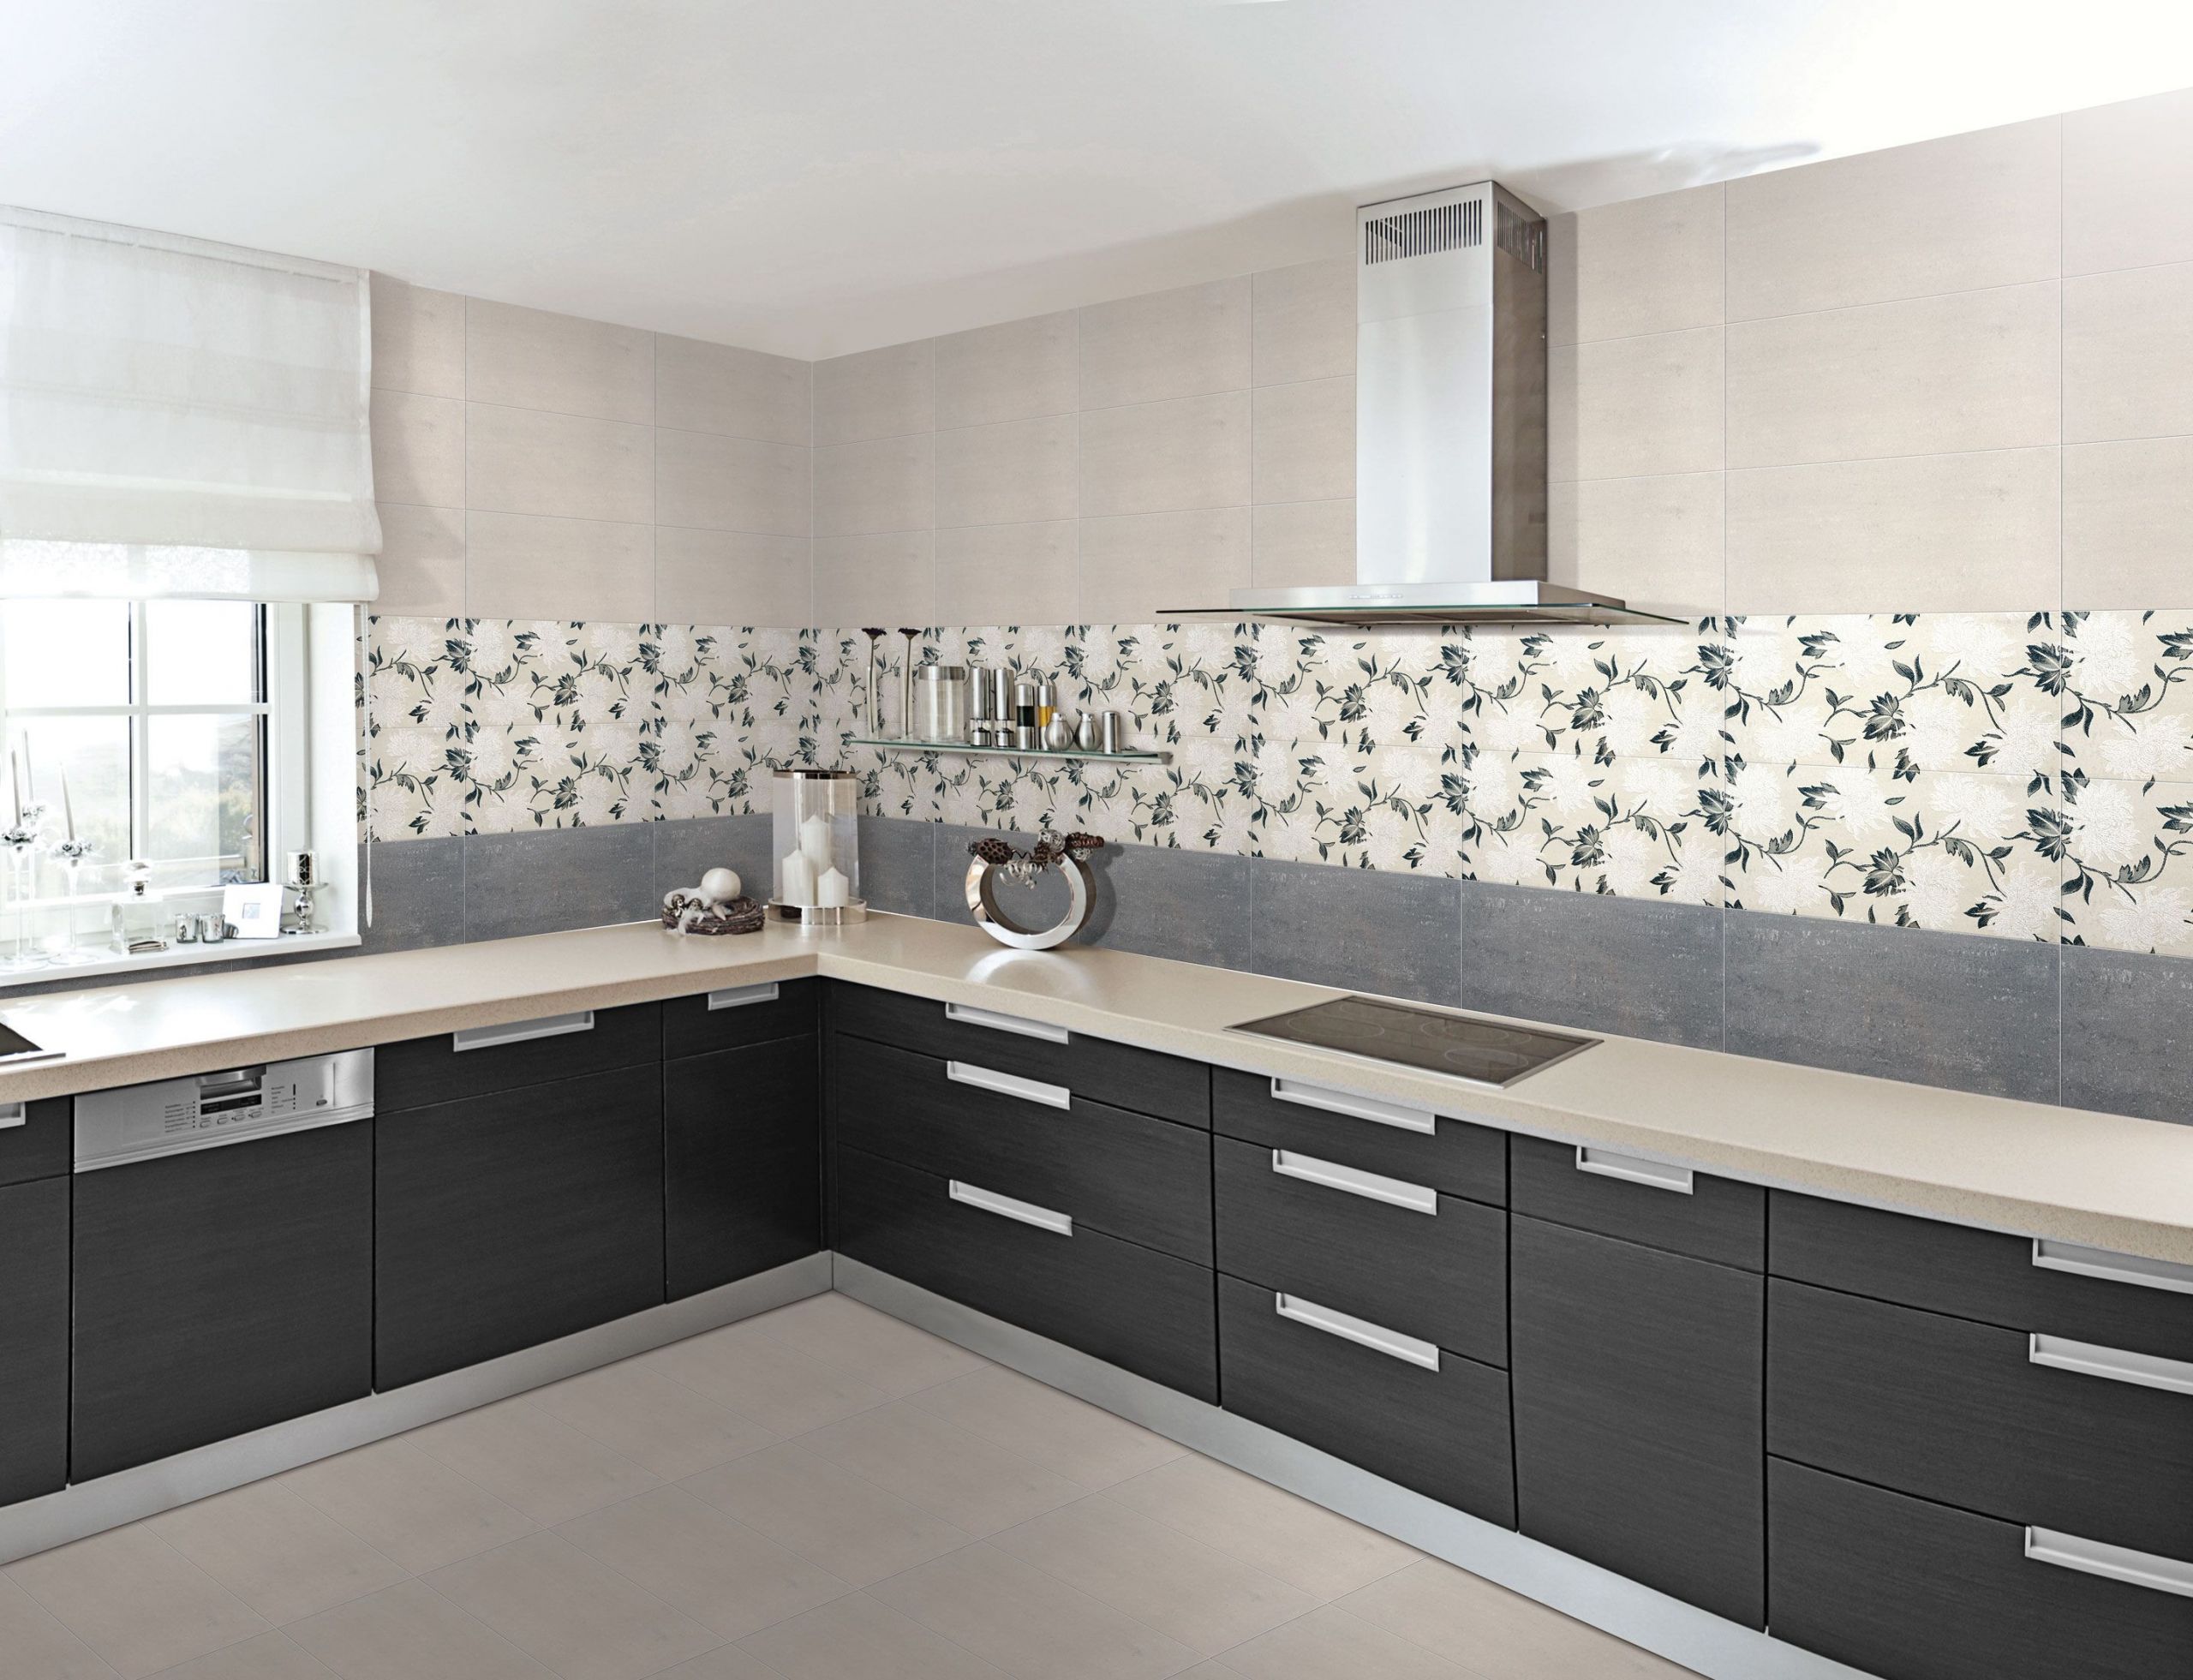 Kitchen Wall Tile Design
 Buy Designer Floor Wall Tiles for Bathroom Bedroom